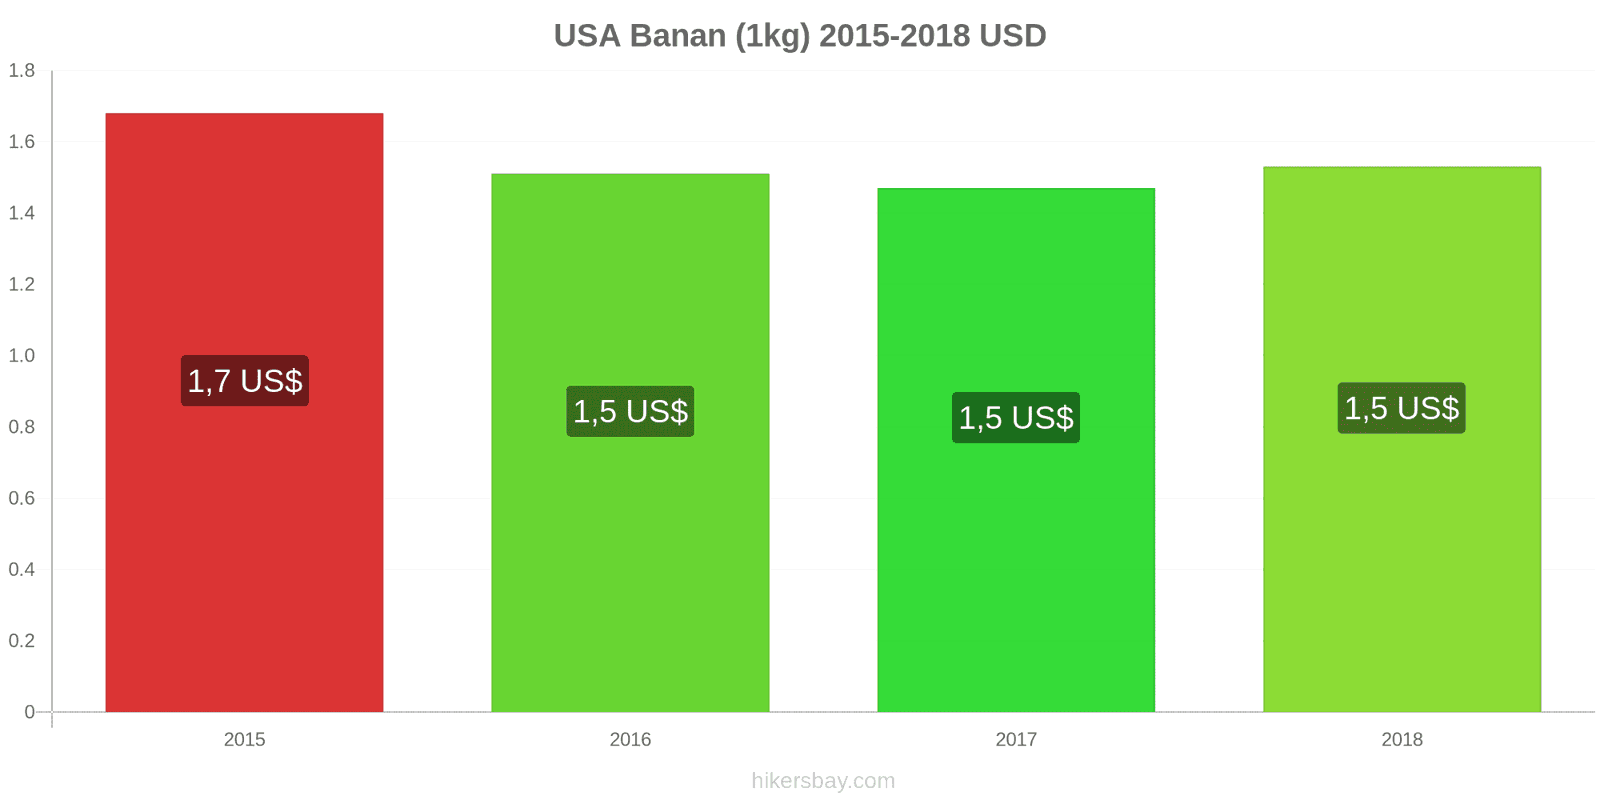 USA prisændringer Bananer (1kg) hikersbay.com